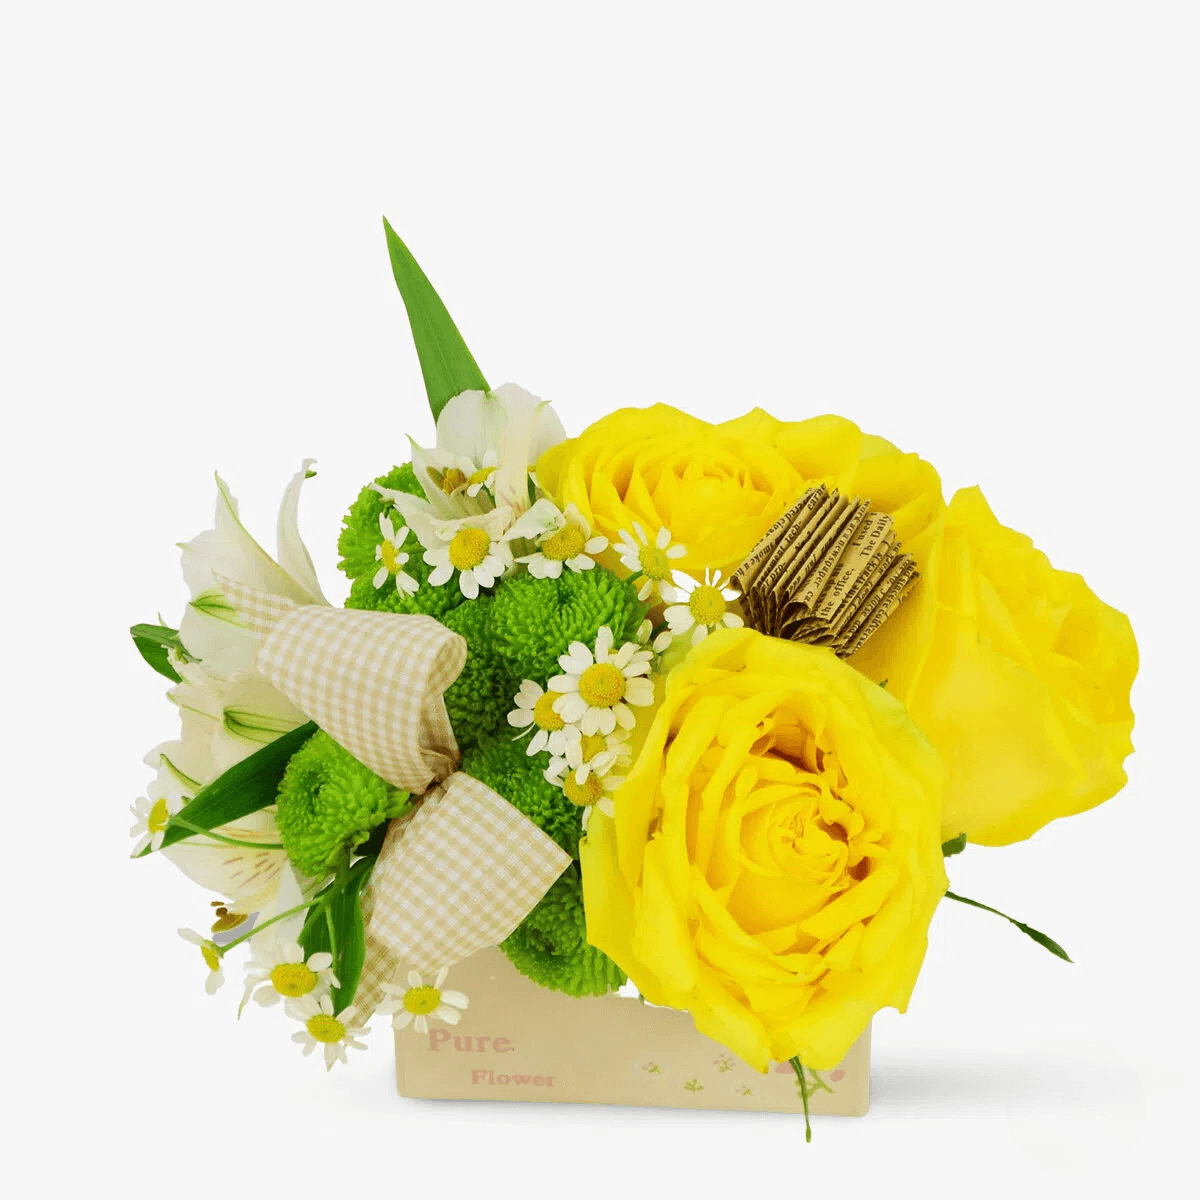 Aranjament floral cu trandafiri galbeni si Crin, Alstroemeria alb, Santini verde pentru ocazii minunate